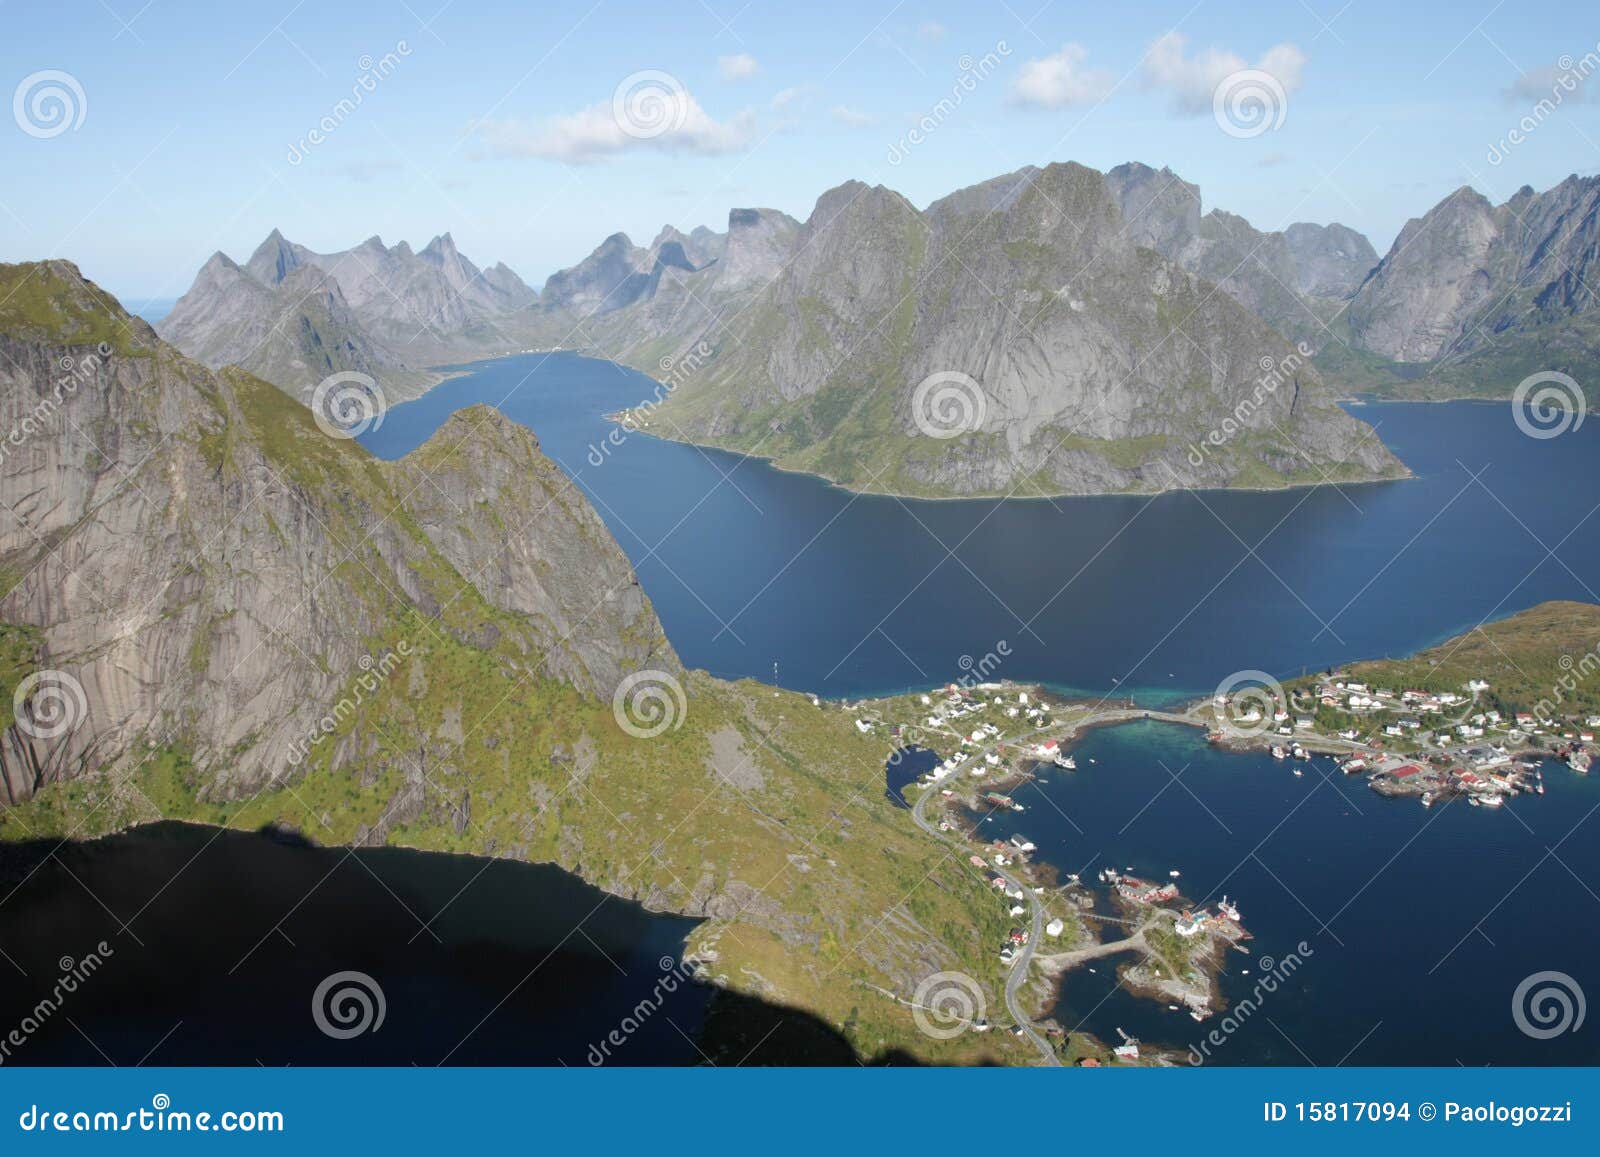 reinefjord from of reinebringen